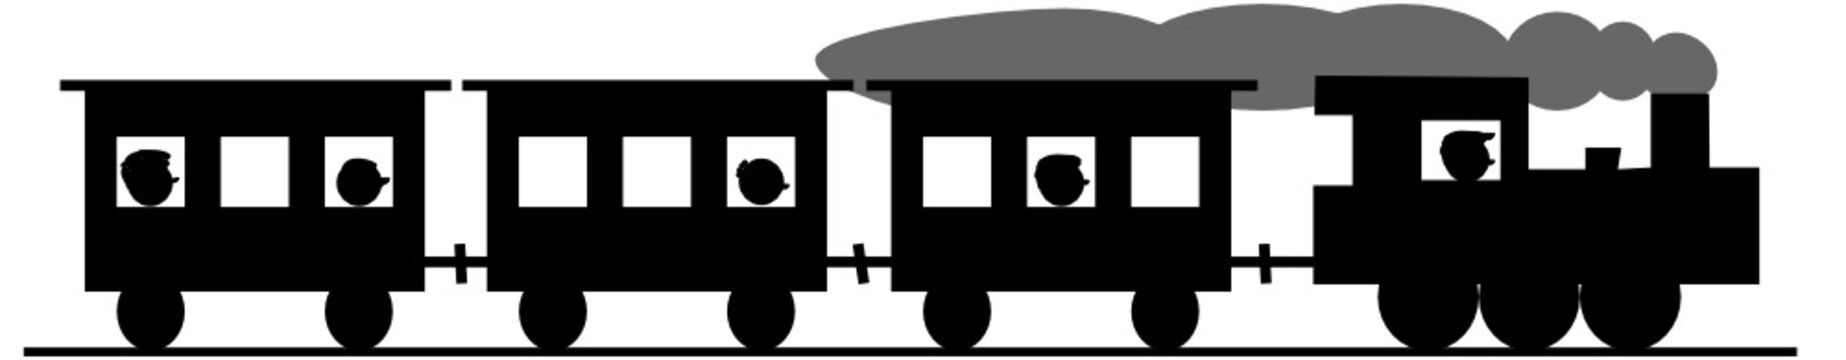 Dampflok mit Personenwaggons - alte Eisenbahn